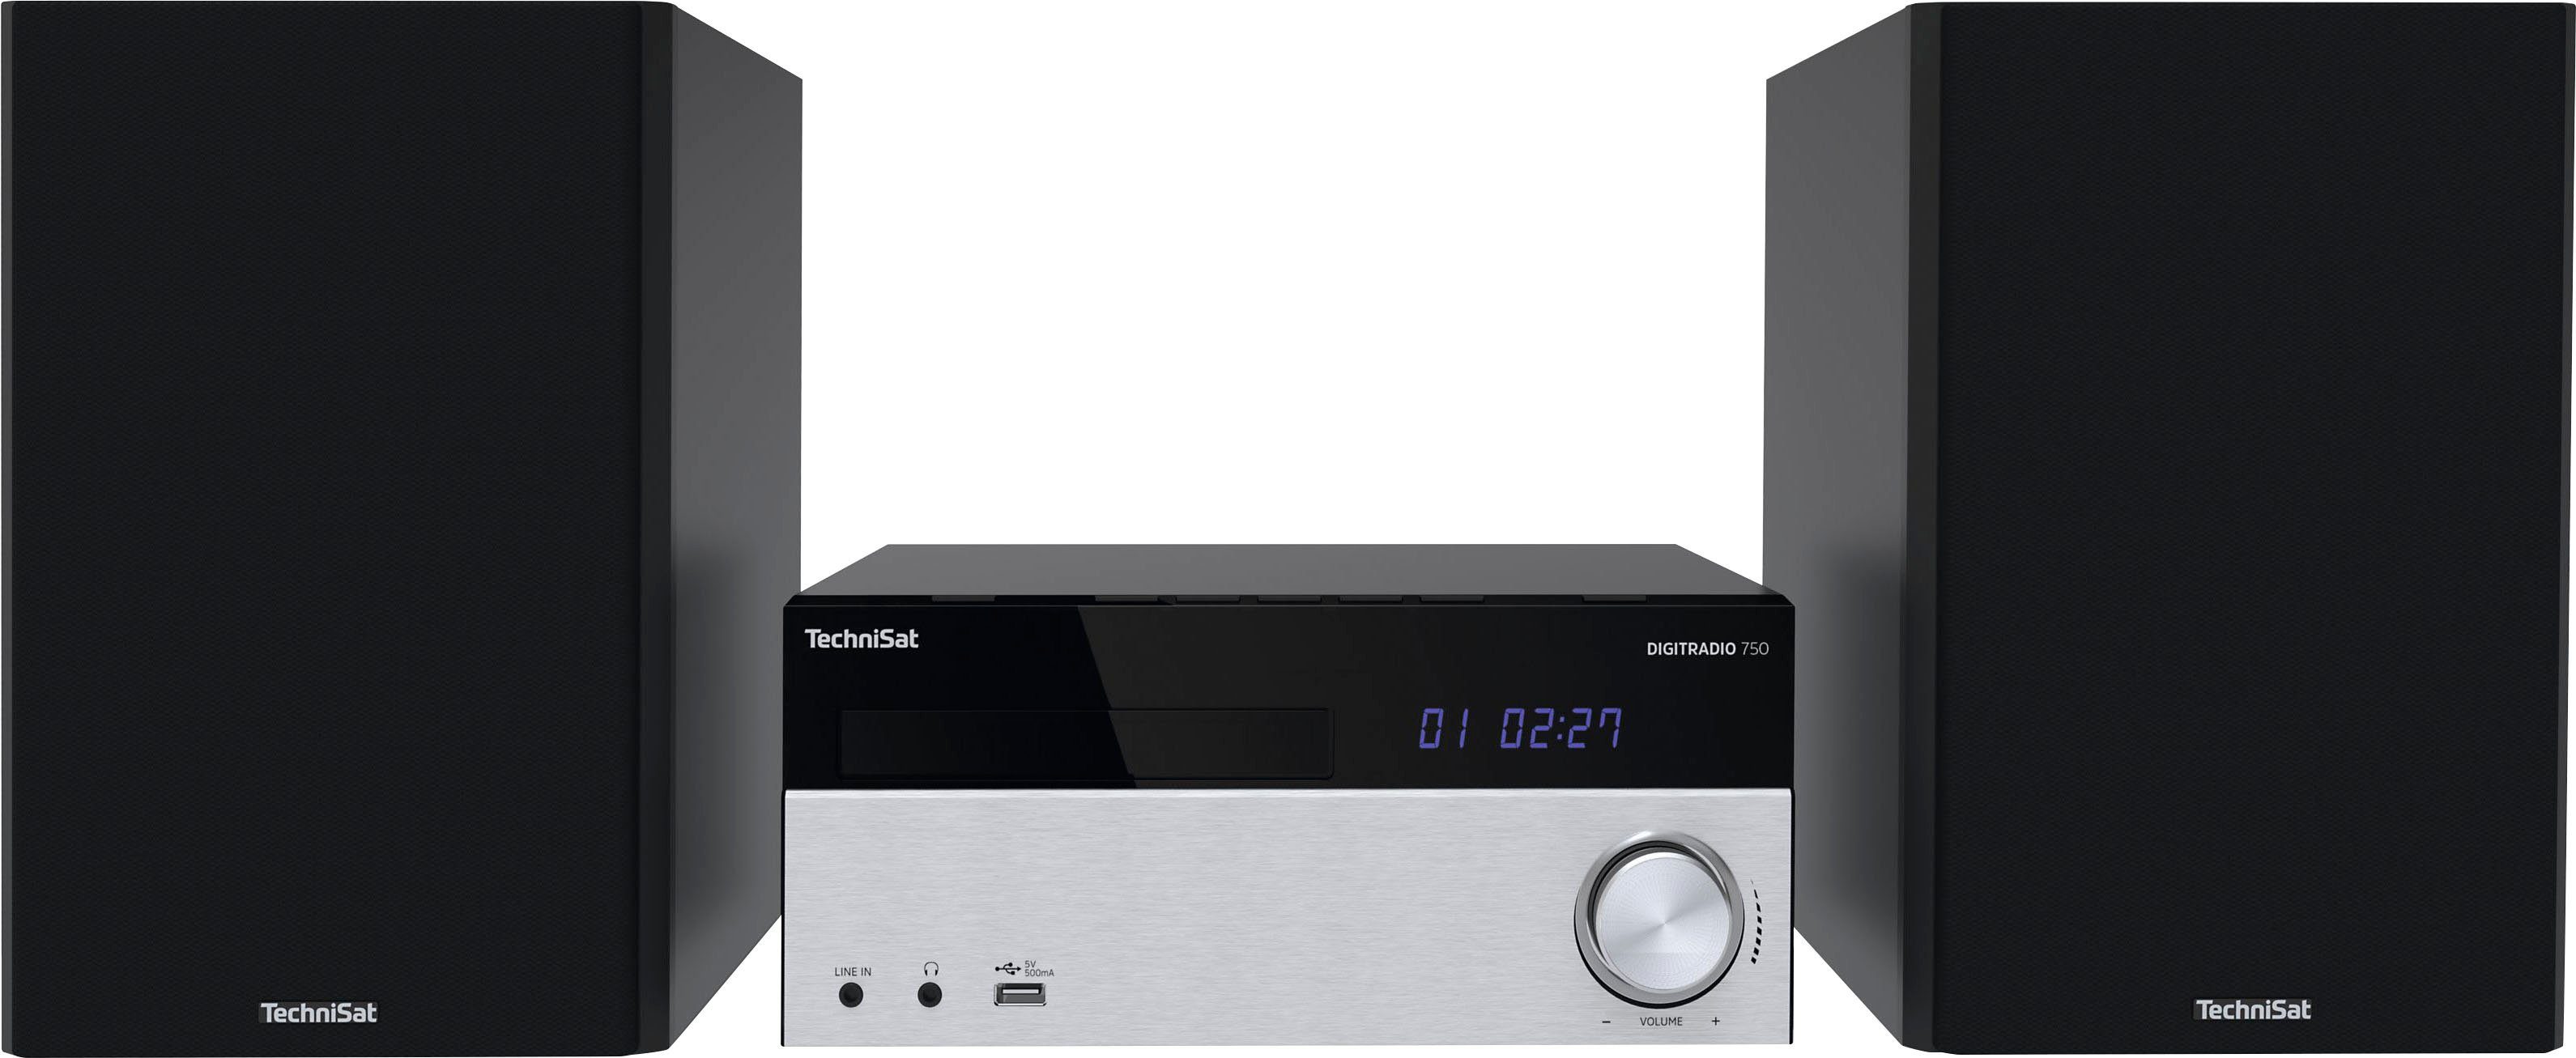 TechniSat DigitRadio 750 dab radio